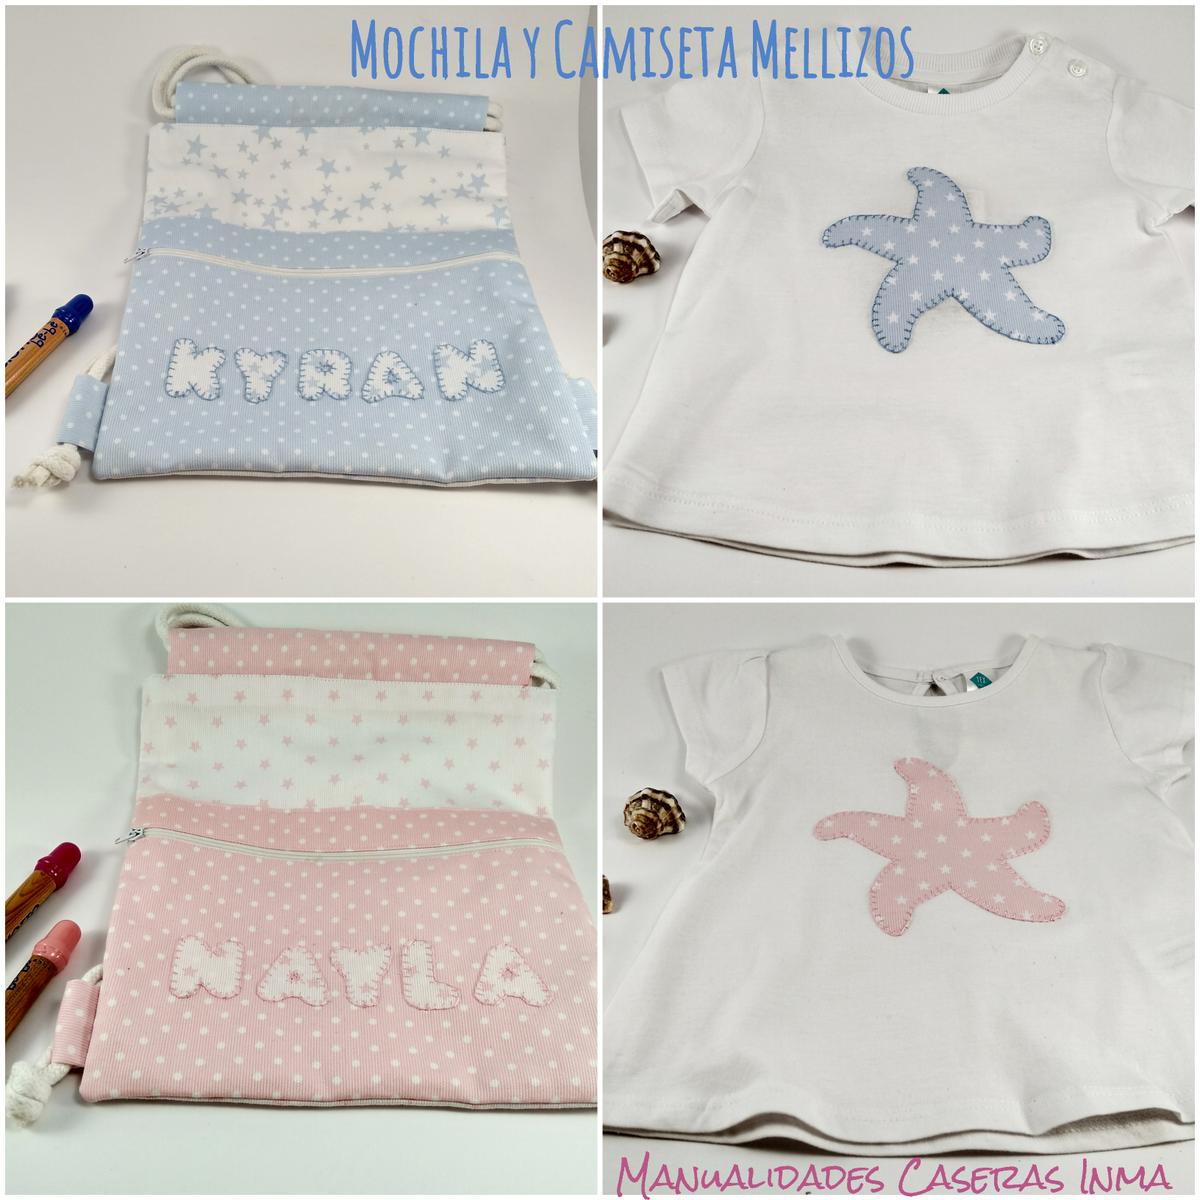 Manualidades Caseras Inma_ Mochillas y camisetas regalo cumpleaños